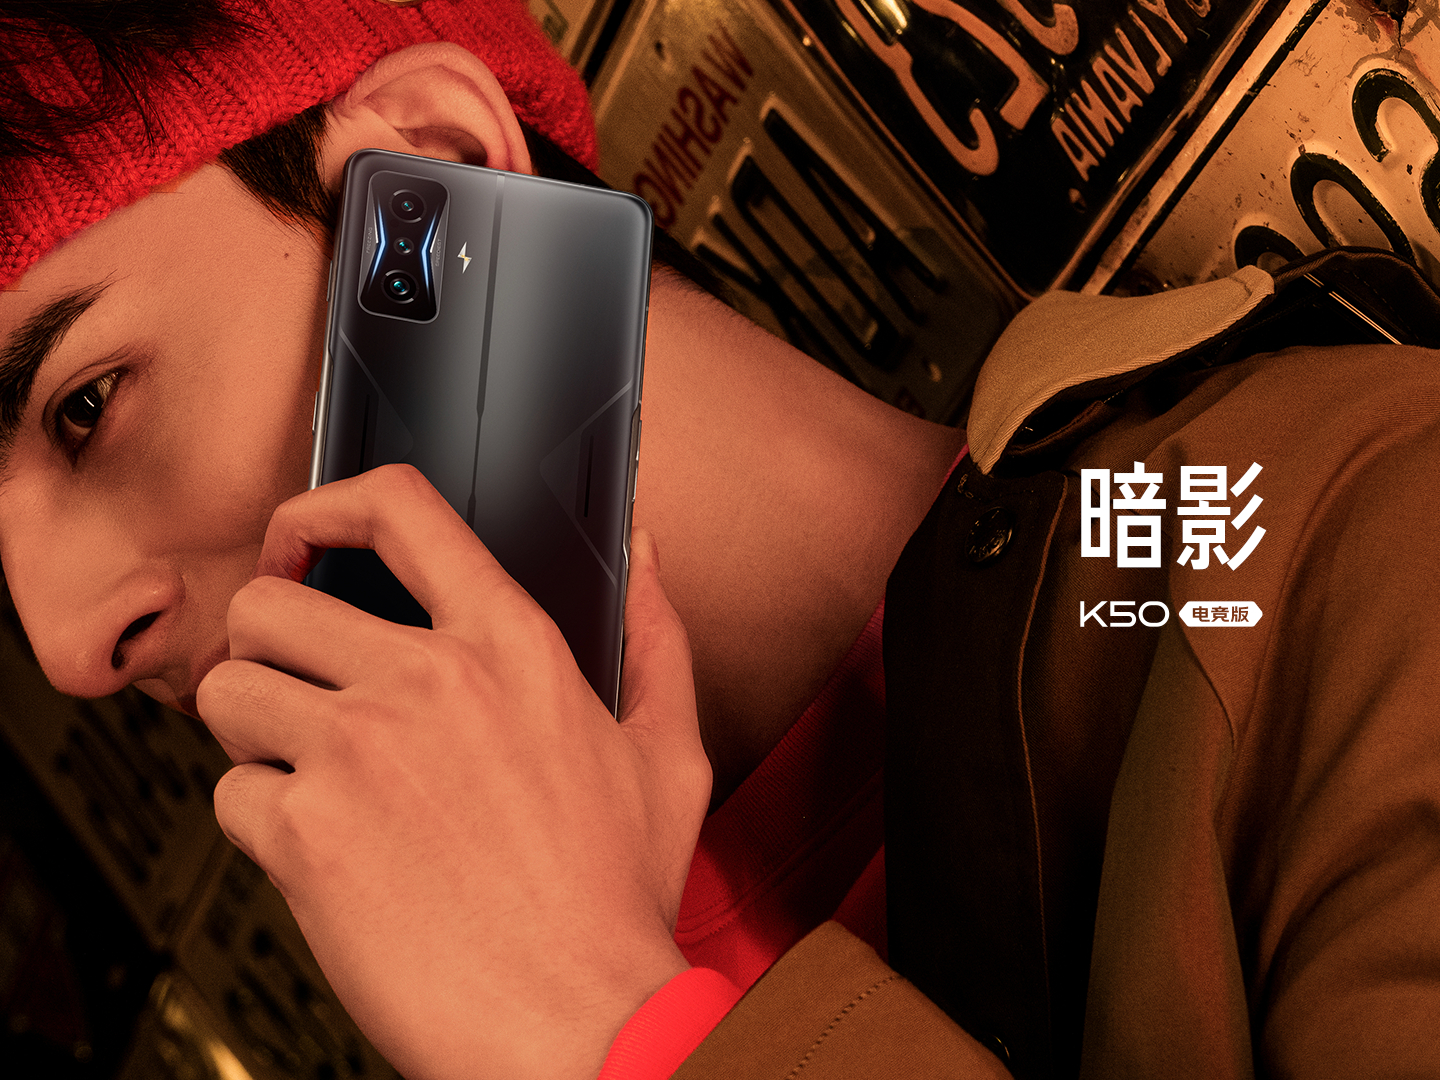 Ponad 44 000 000 USD w 1 minutę – Xiaomi pochwaliło się sprzedażą Redmi K50 Gaming Edition